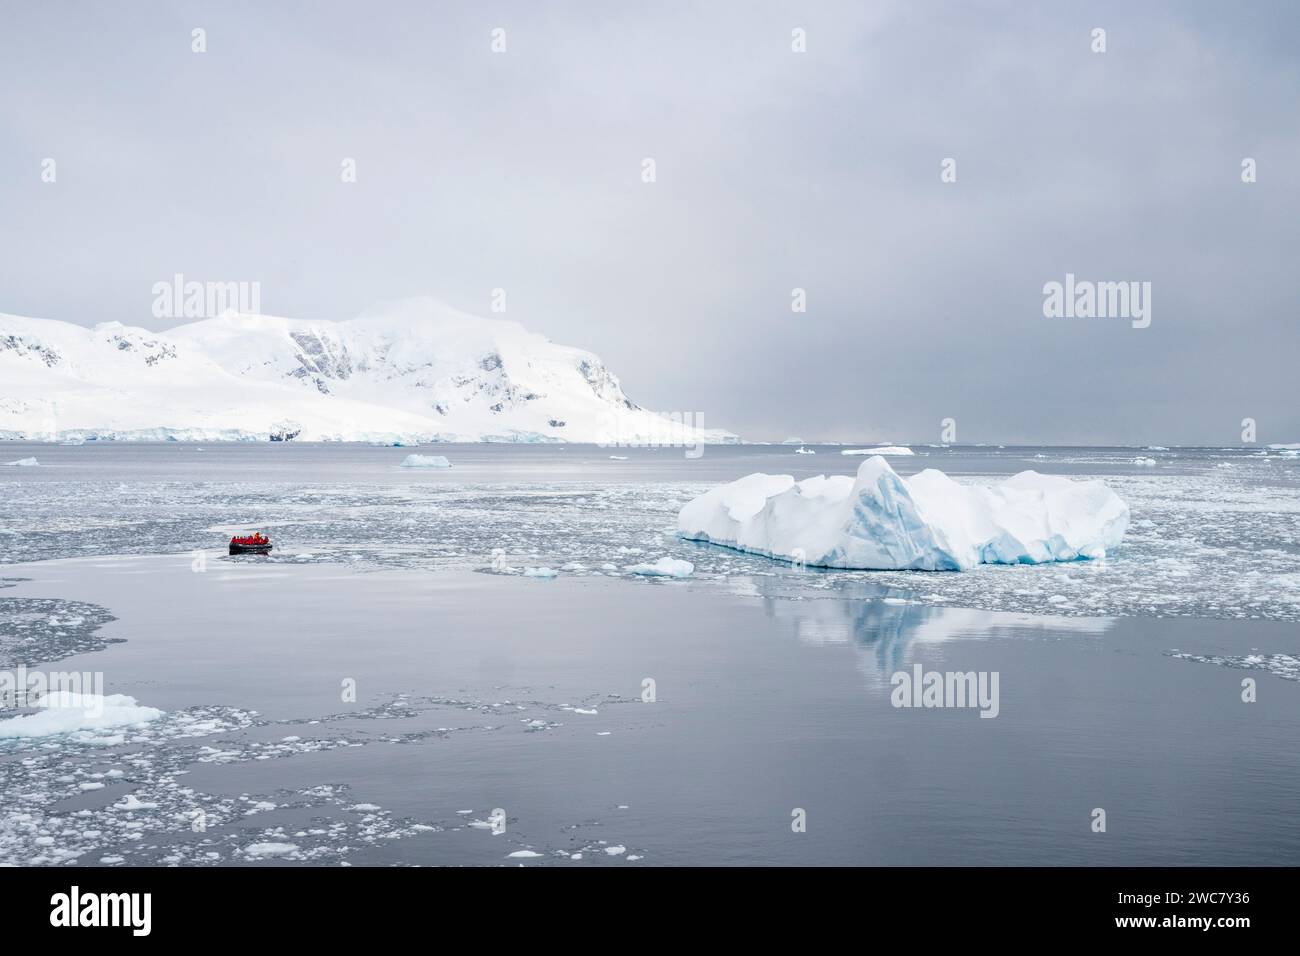 Zodiaco navegando a través del hielo en Neko Harbor, Antártida, agua llena de hielo y icebergs en su lugar, reflejos y picos nevados Foto de stock